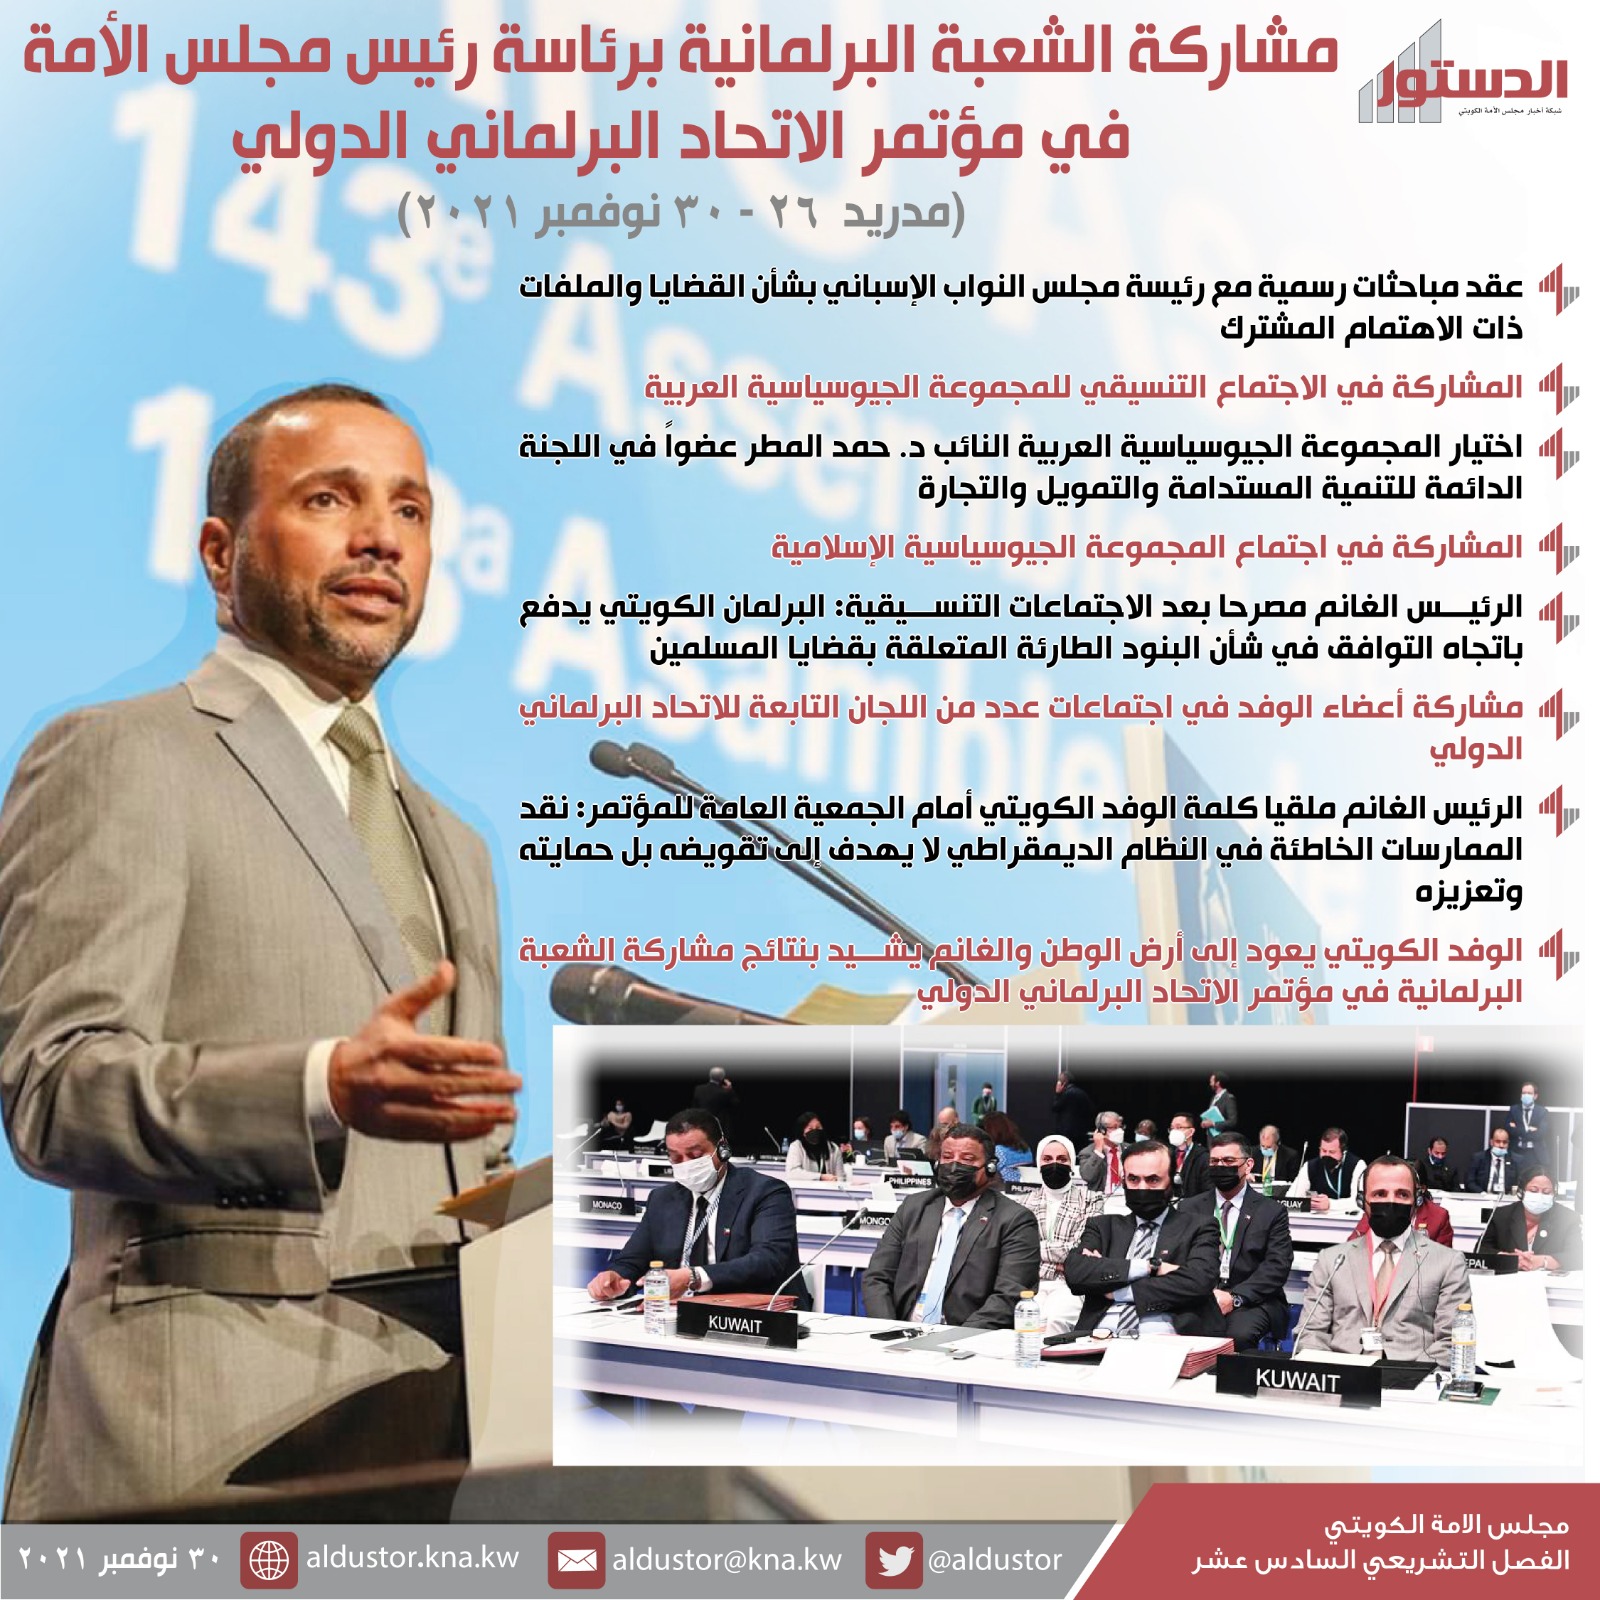 الوفد الكويتي إلى مؤتمر (البرلماني الدولي): قيادة الجهود الإقليمية نحو التوافق 